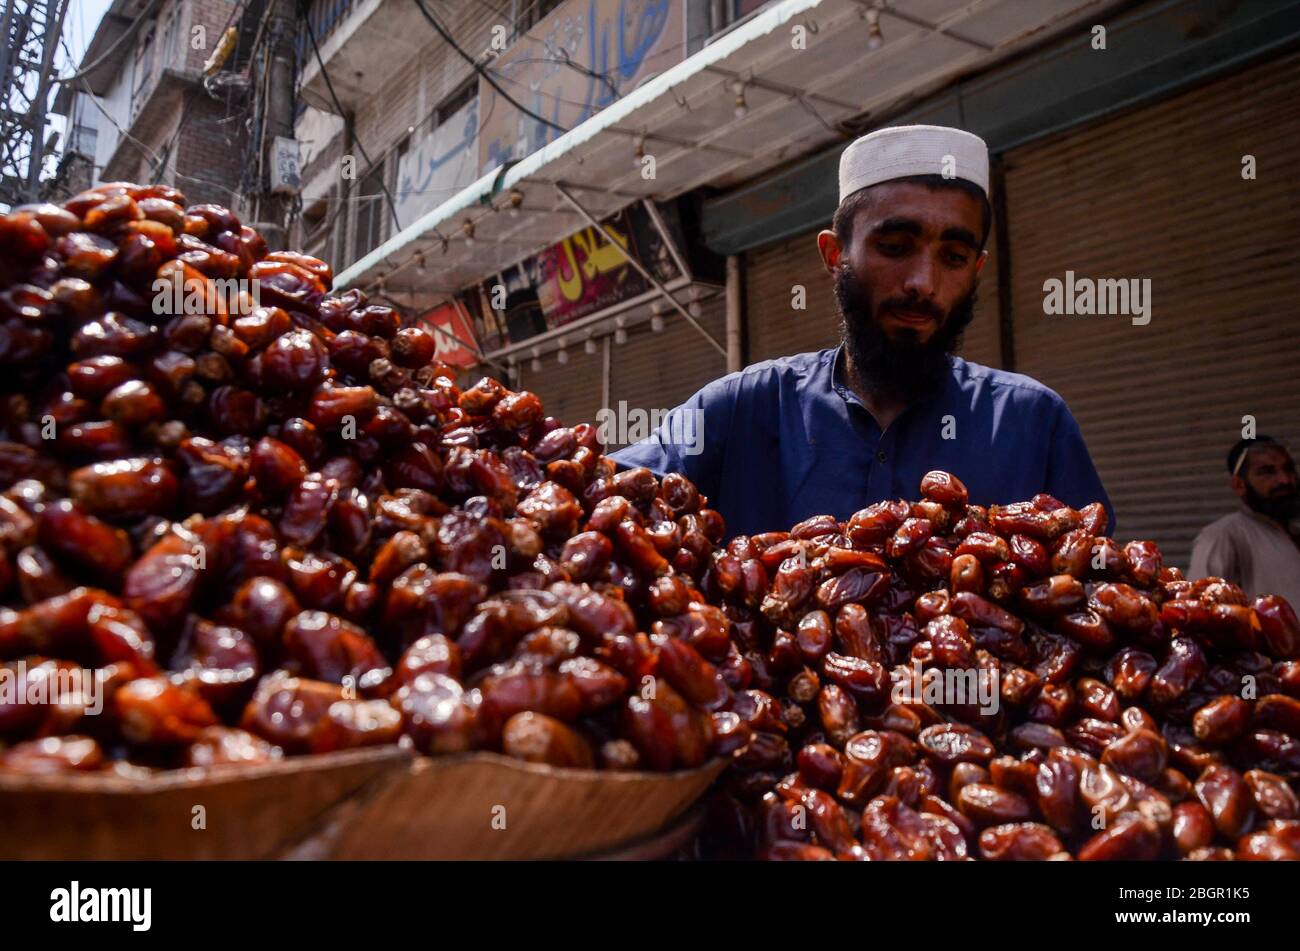 22 de abril de 2020: Peshawar, Pakistán. 22 de abril de 2020. La gente compra diferentes variedades de fechas a vendedores ambulantes en la calle del mercado Peepal Mandi en Peshawar en preparación para el Ramadán. Las fechas son muy populares durante el mes sagrado musulmán del Ramadán. La comida que rompe el ayuno diario durante el Ramadán se llama Iftar, y es costumbre en muchos países que los musulmanes rompan su ayuno en el momento de Iftar consumiendo fechas crédito: Hasnain Ali/IMAGESLIVE/ZUMA Wire/Alamy Live News Foto de stock